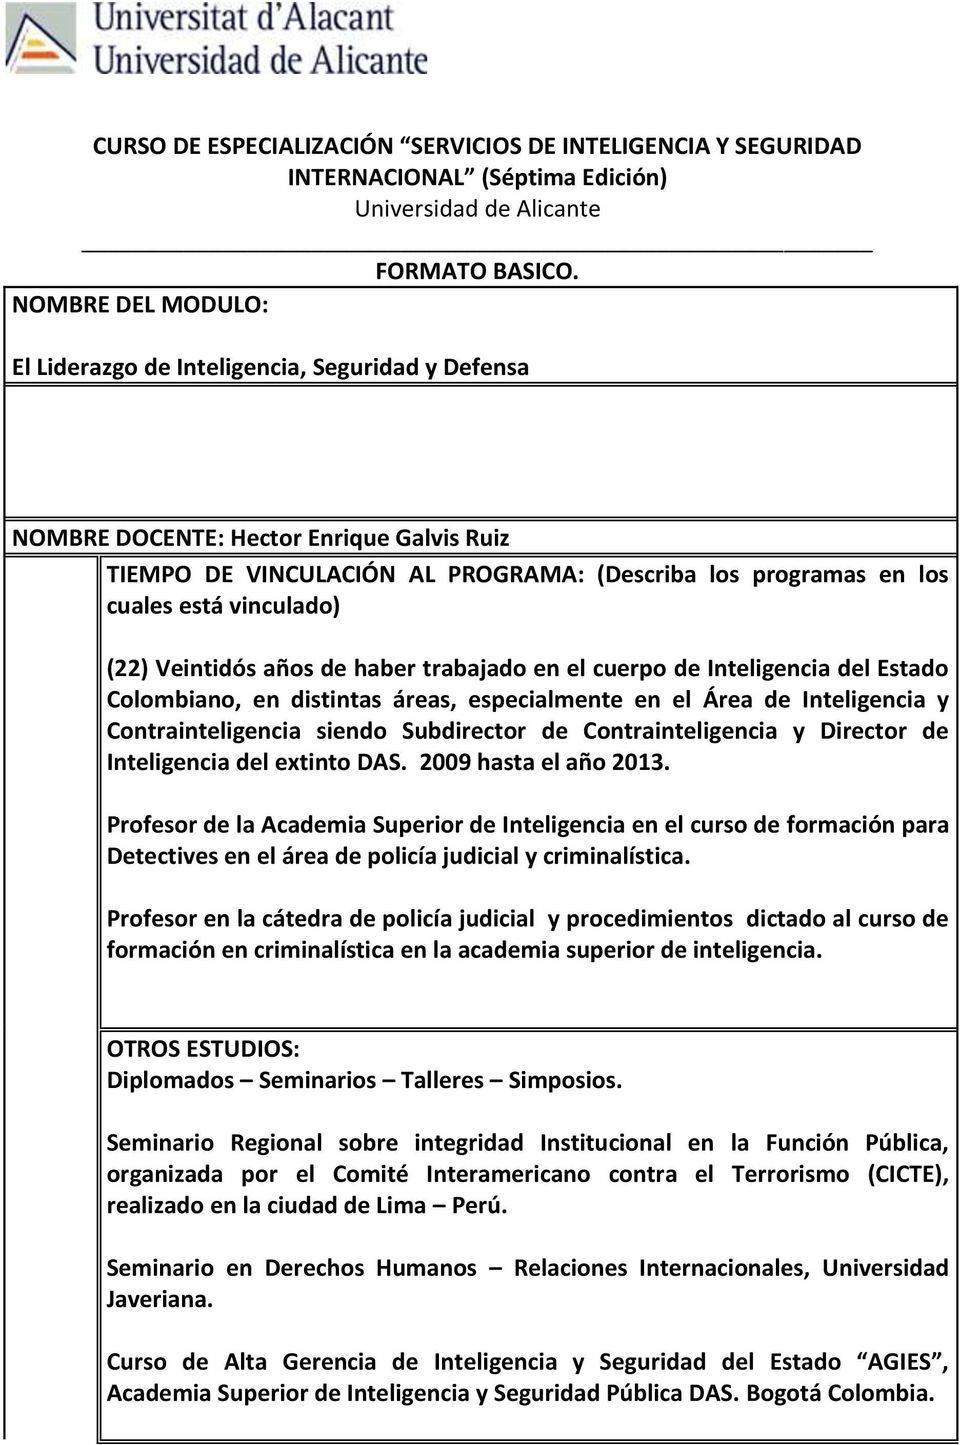 vinculado) (22) Veintidós años de haber trabajado en el cuerpo de Inteligencia del Estado Colombiano, en distintas áreas, especialmente en el Área de Inteligencia y Contrainteligencia siendo